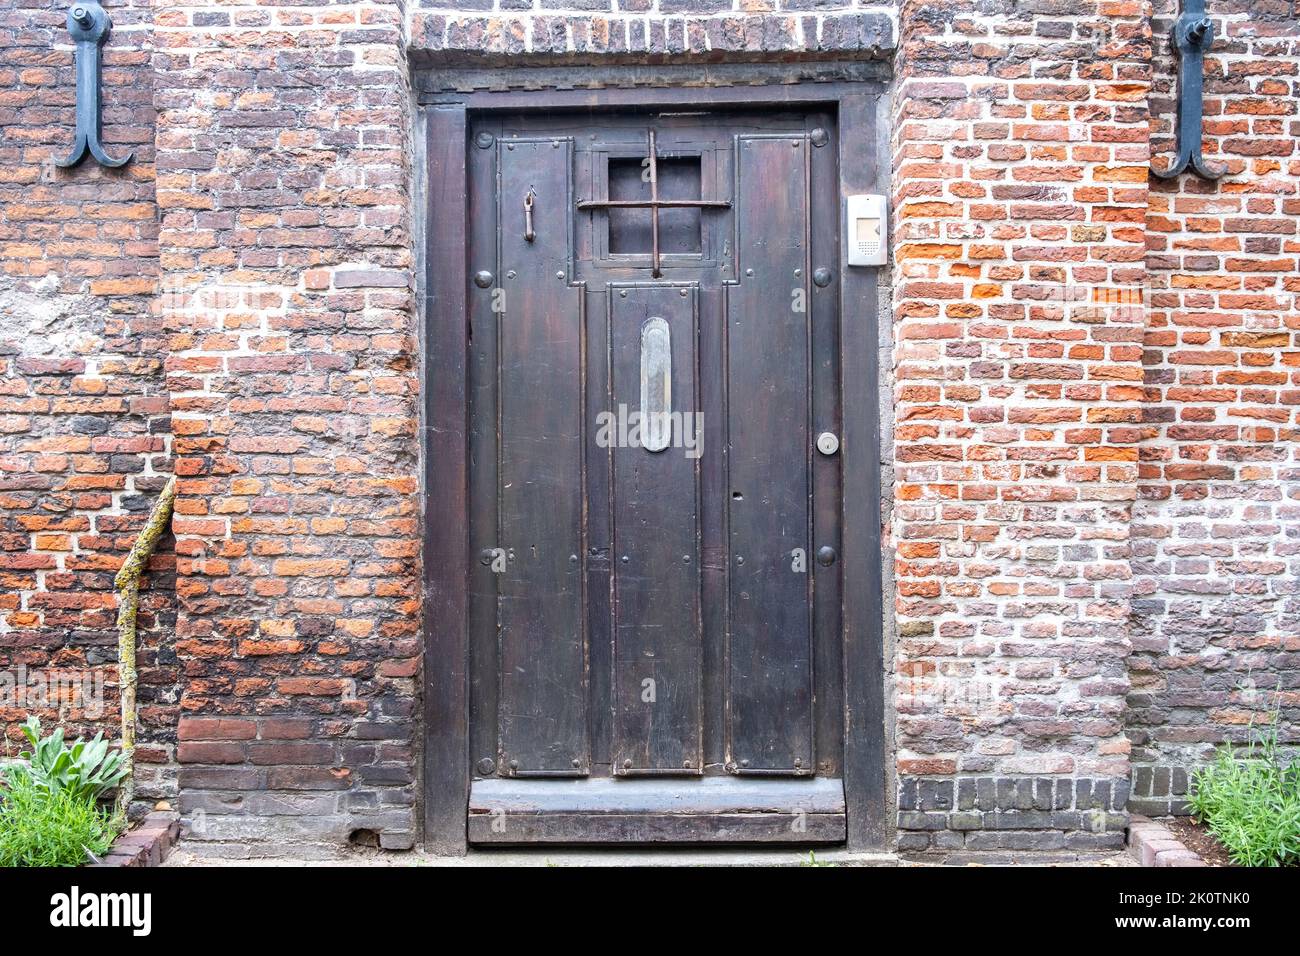 Brickwall house facade with vintage wooden door background. Doorway with irons on the door window and door phone, parterre with green plants. Netherla Stock Photo